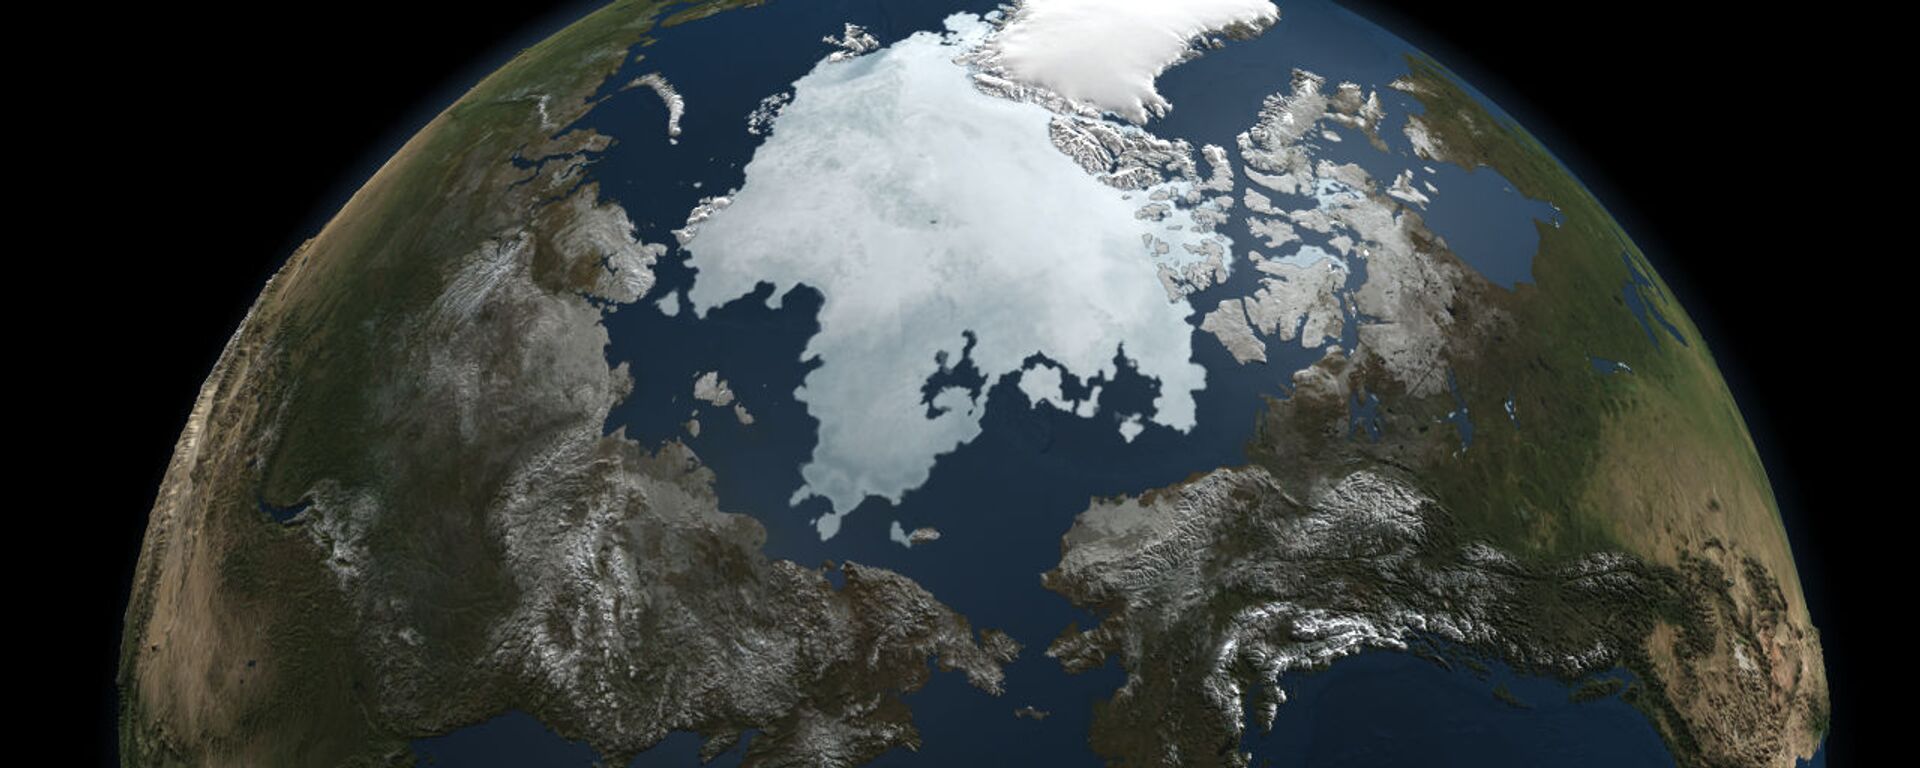 Hielo en el océano Ártico - Sputnik Mundo, 1920, 20.04.2021